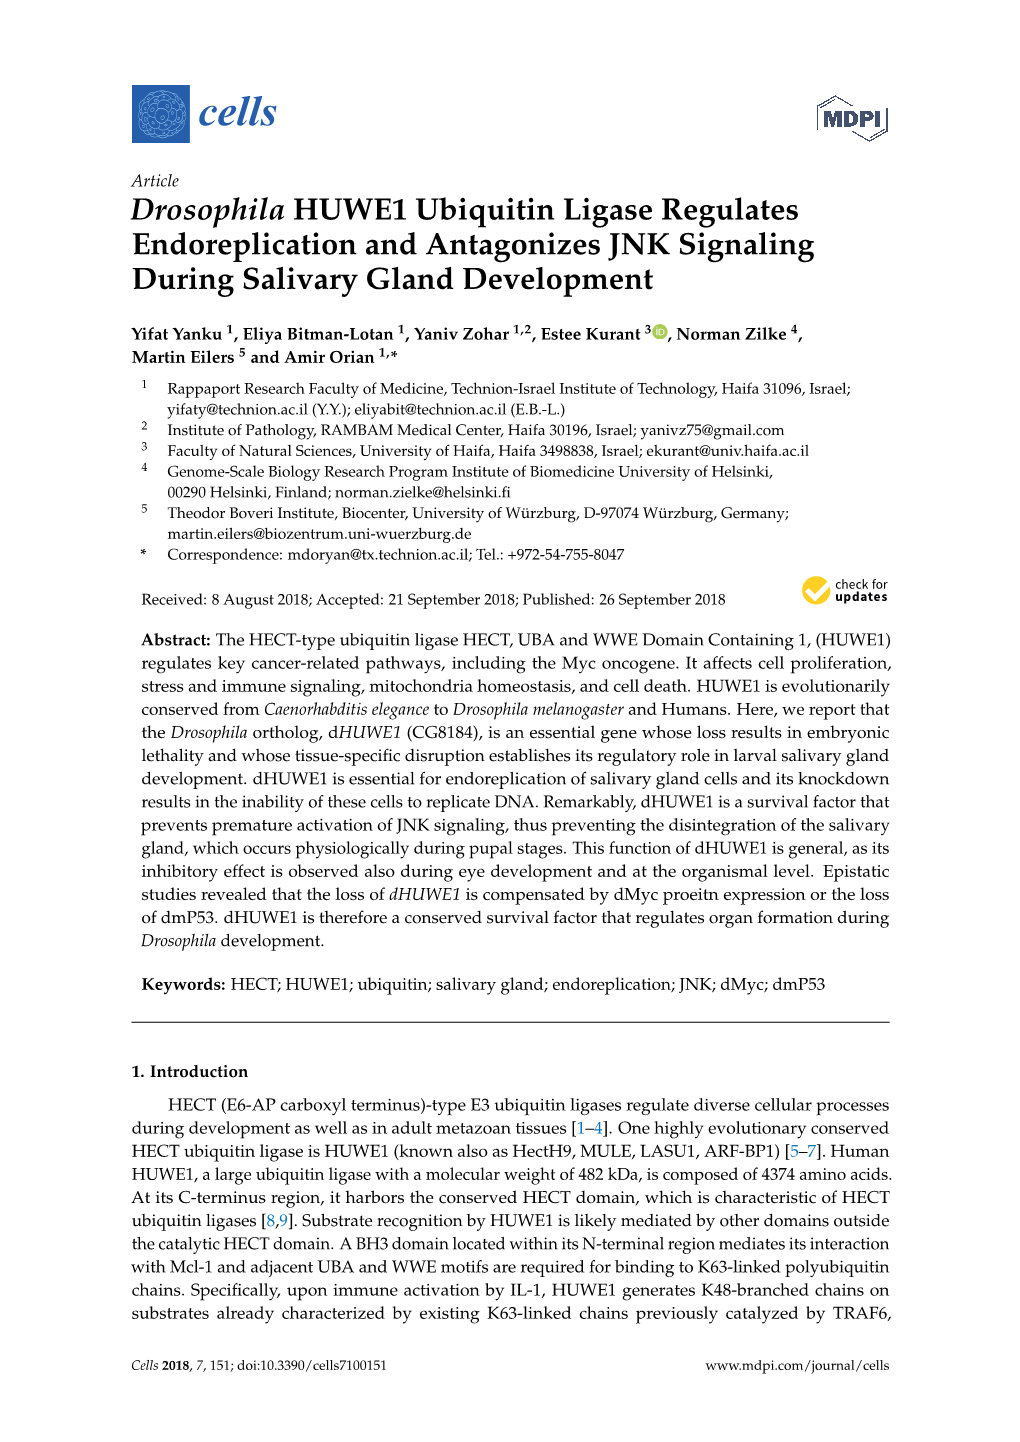 Drosophila HUWE1 Ubiquitin Ligase Regulates Endoreplication and Antagonizes JNK Signaling During Salivary Gland Development